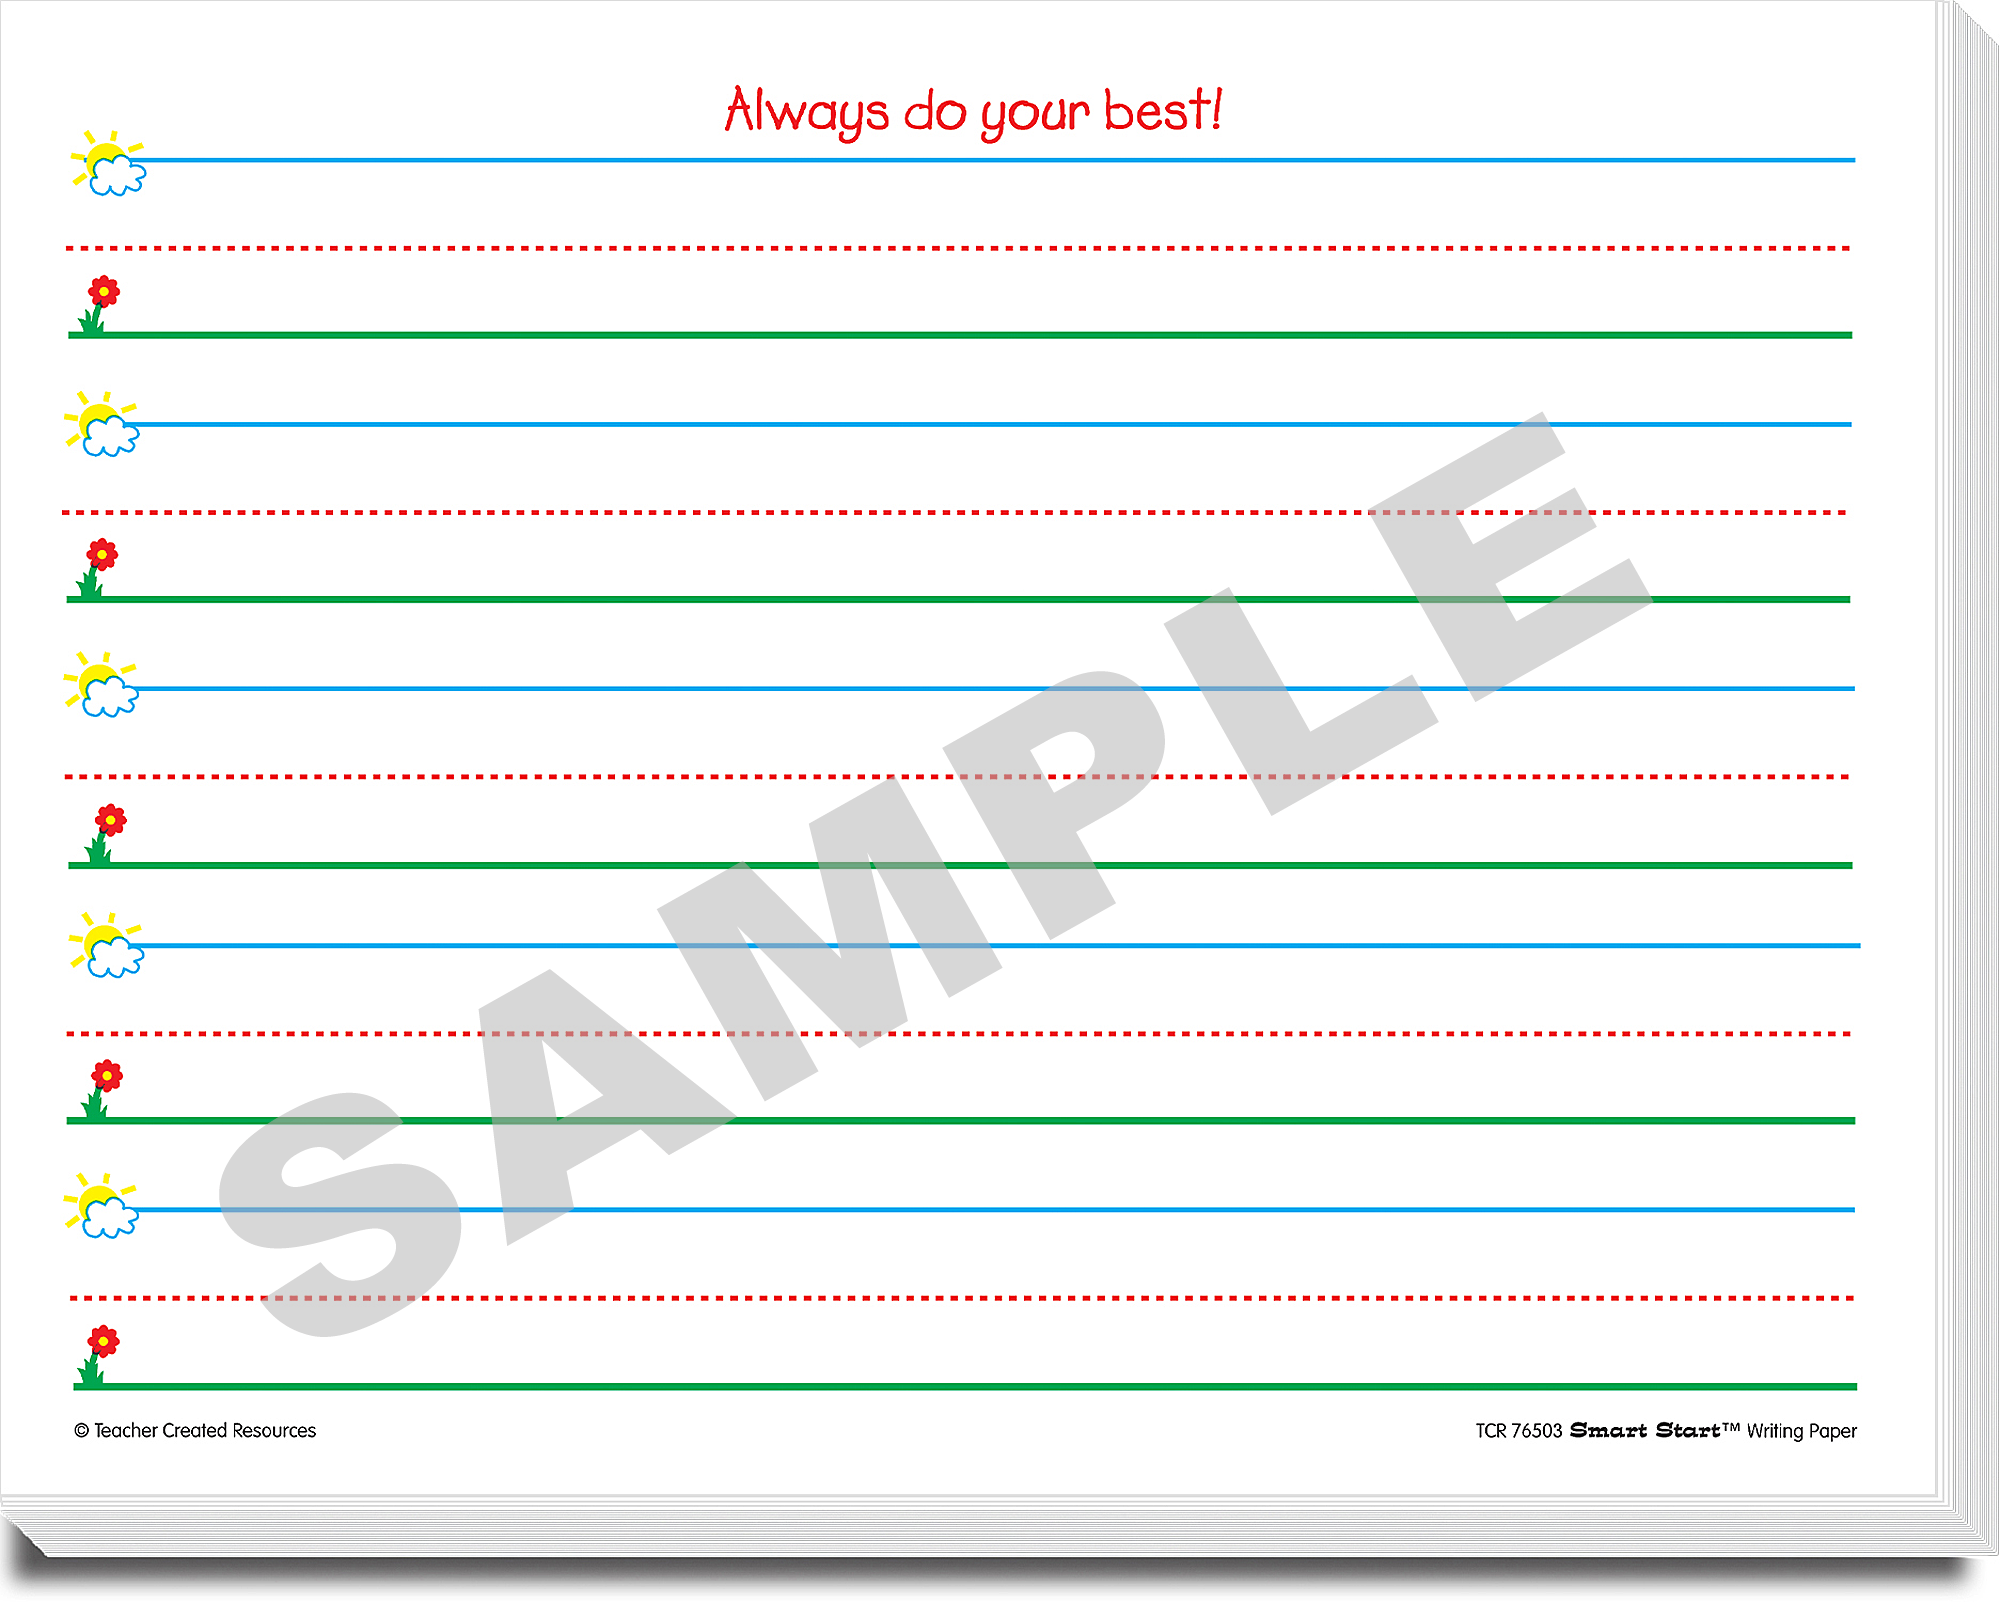 Smart Start Writing Paper Grades K-1 40-Sheet Package